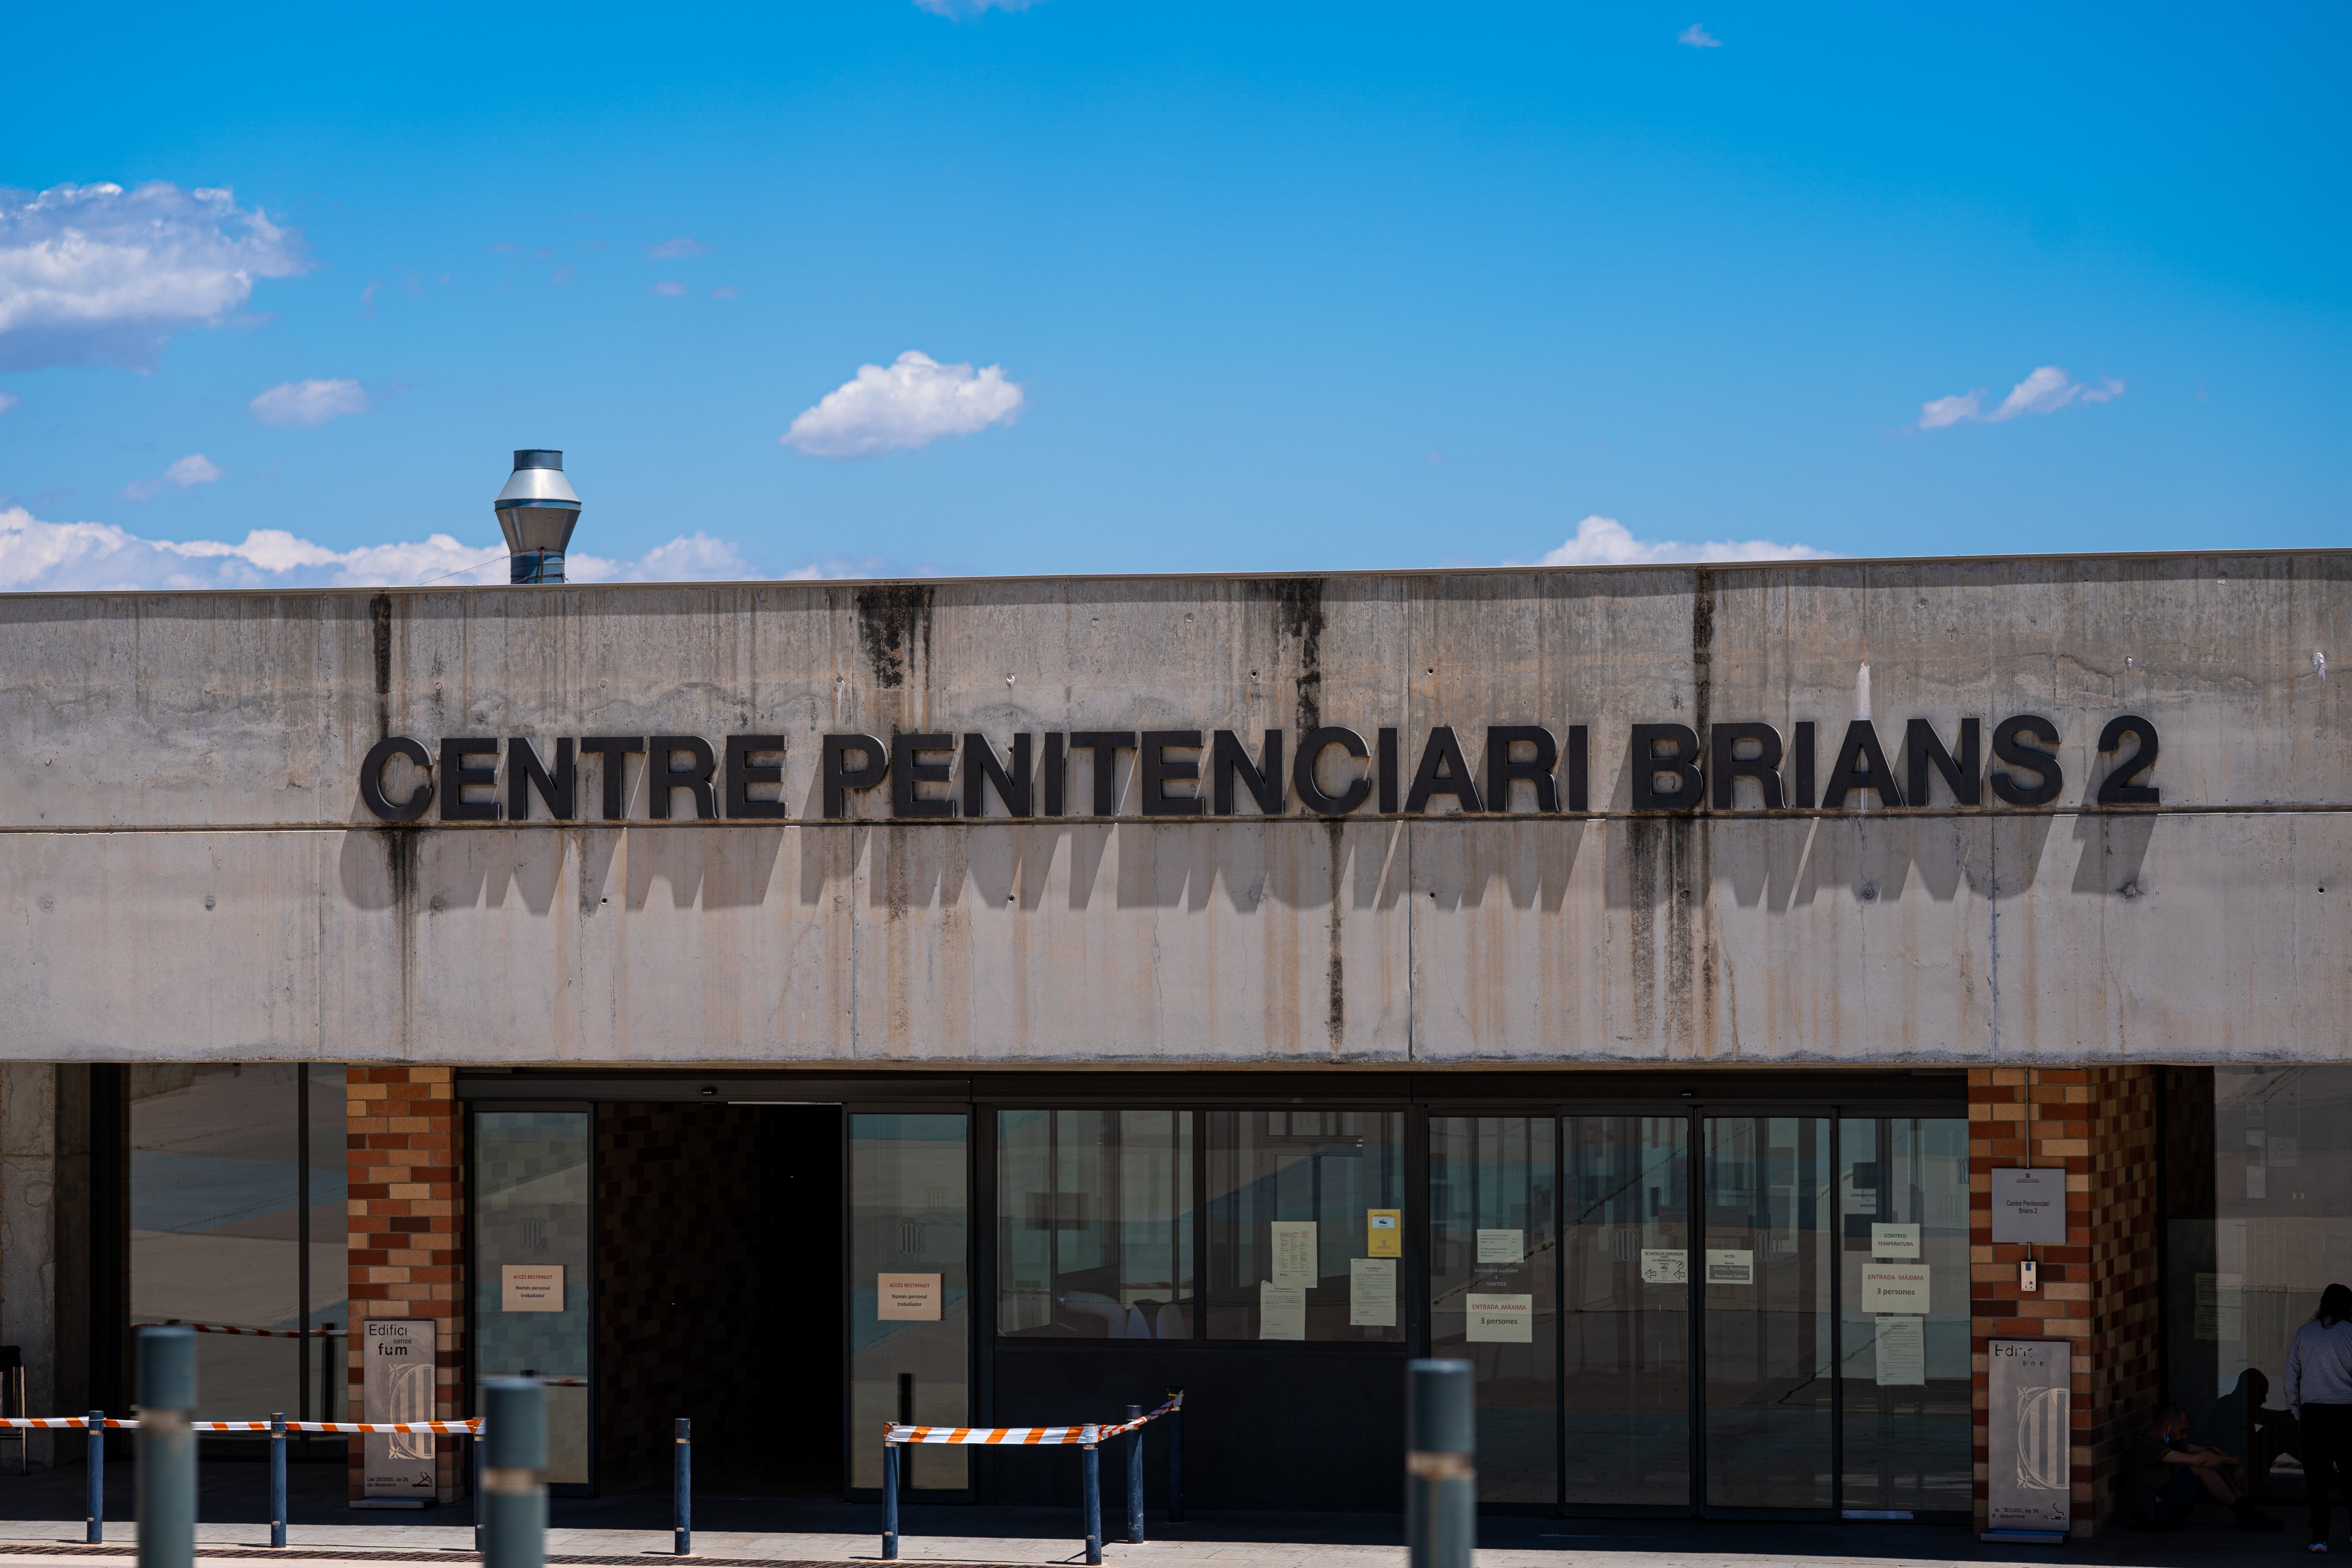 EuropaPress 3804885 fachada centro penitenciario brians barcelona prision donde fue hallado